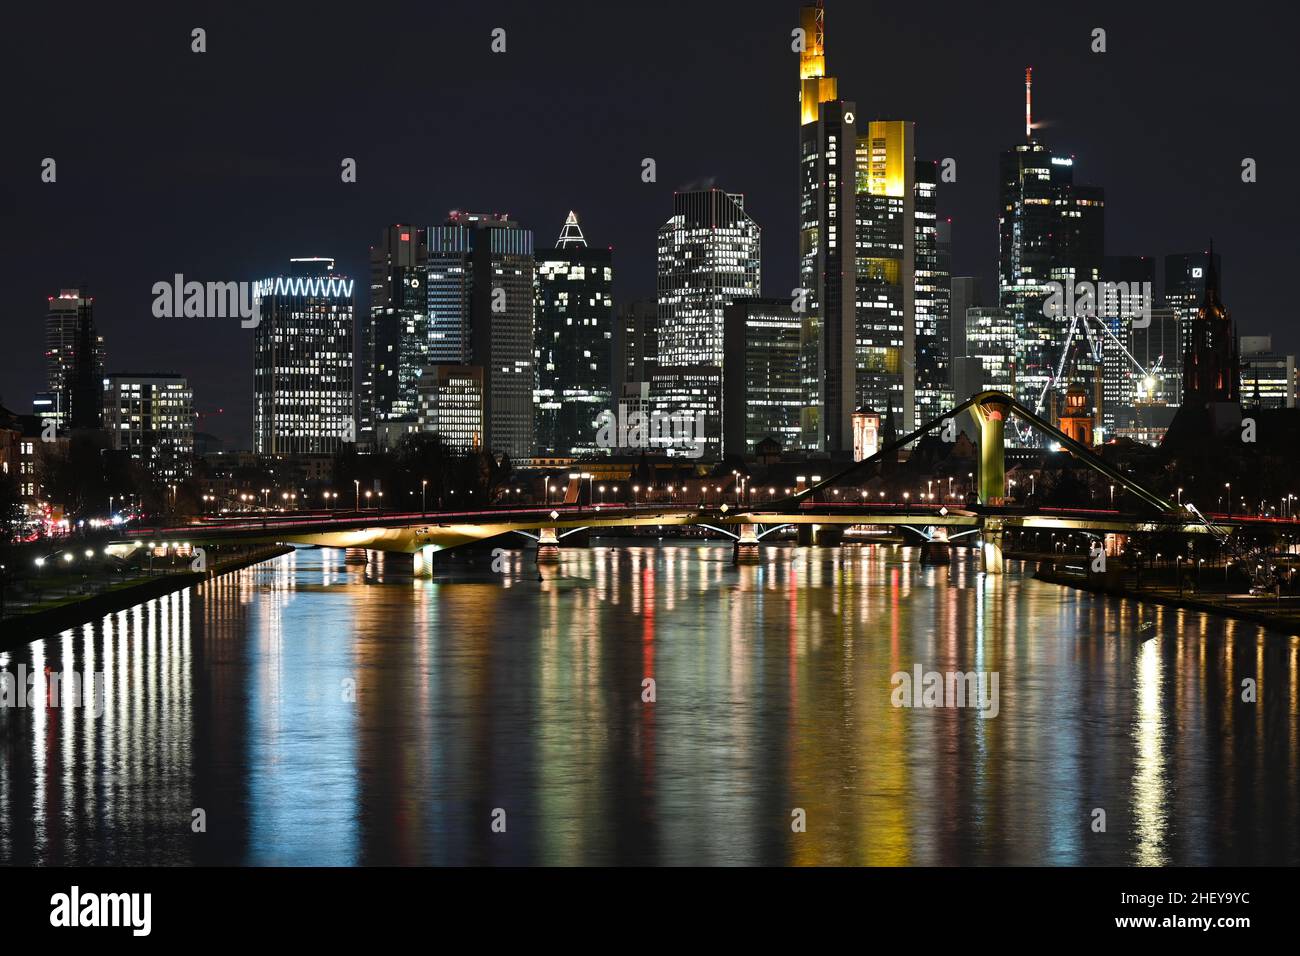 12 gennaio 2022, Hessen, Francoforte sul meno: Mentre gli uffici degli alti edifici di Francoforte sono illuminati in modo luminoso la sera, le luci colorate si riflettono nel fiume meno. Foto: Arne Dedert/dpa Foto Stock